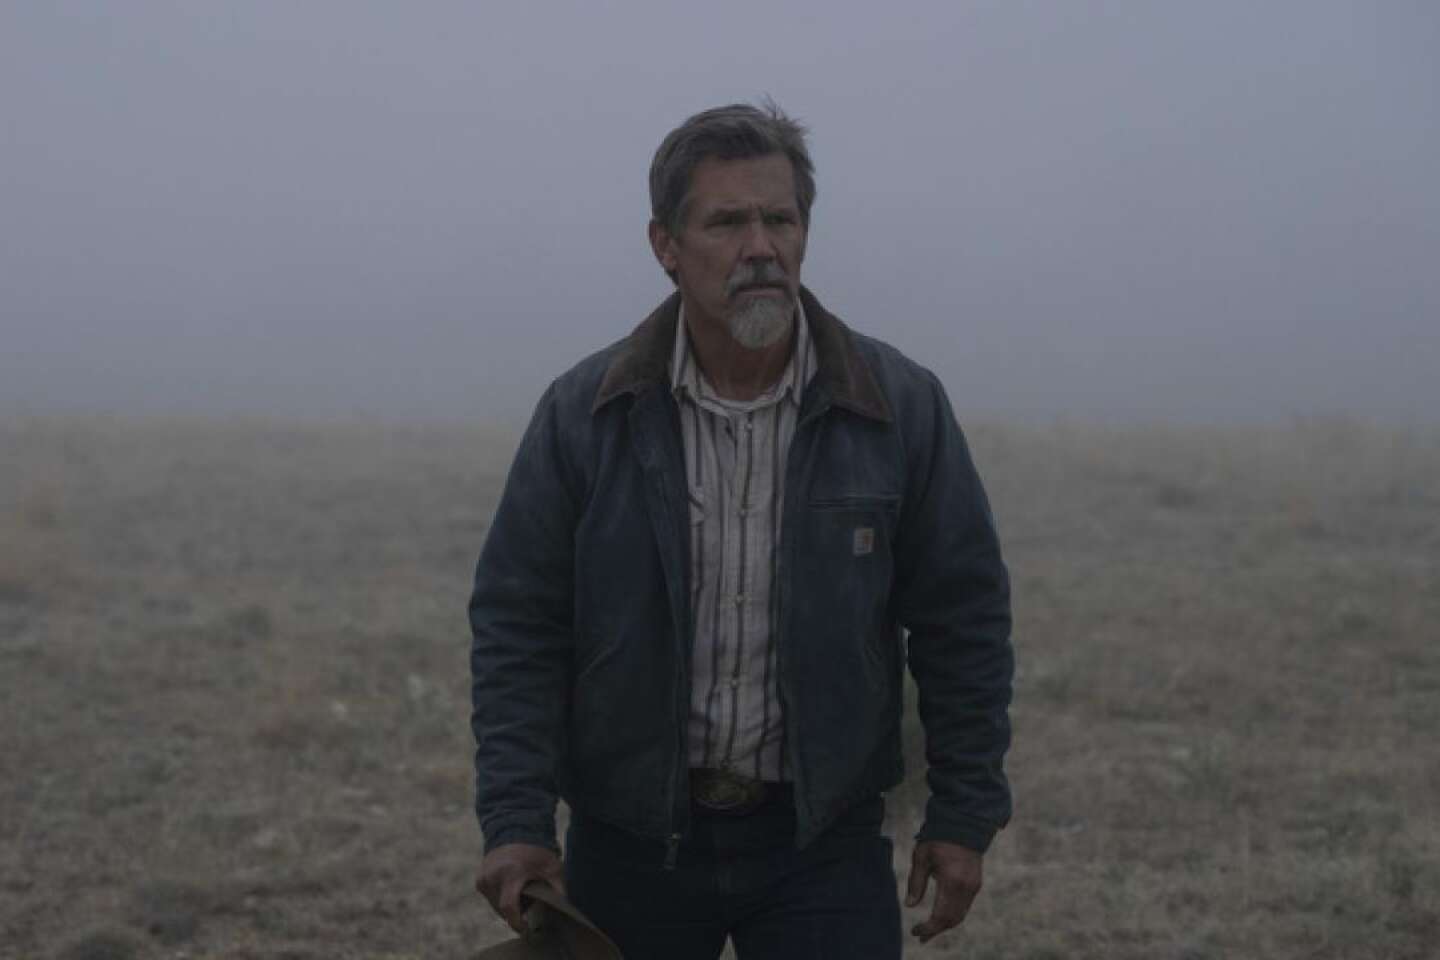 Regarder la vidéo « Outer Range », saison 2, sur Prime Video : le grand trou dans la prairie du Wyoming